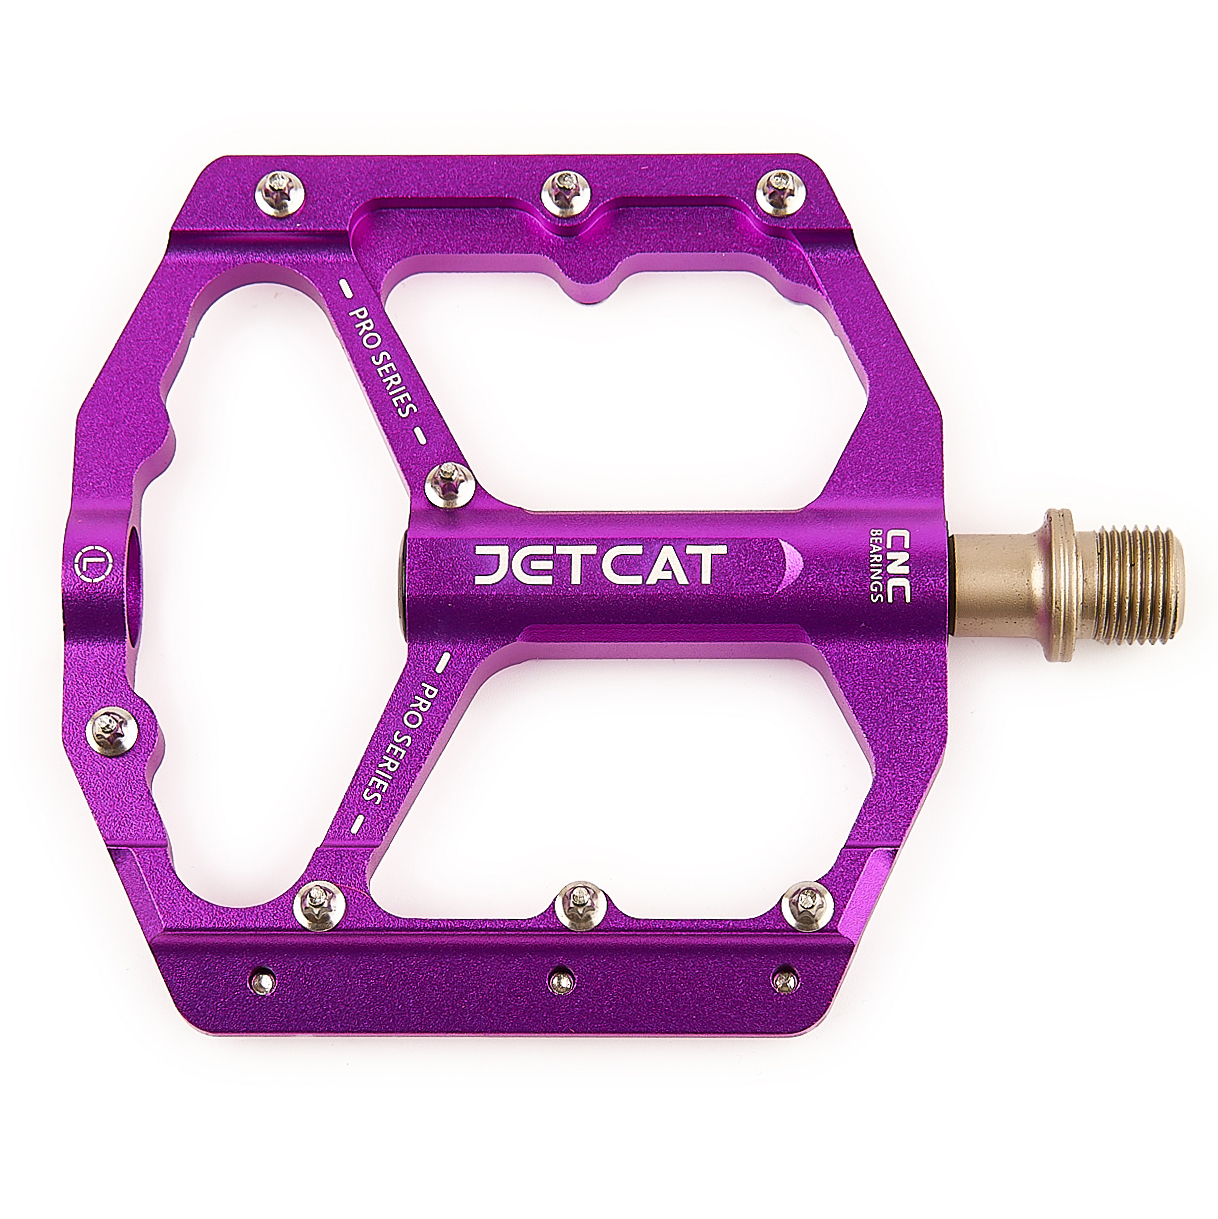 Педали велосипедные JETCAT PRO 115 алюминиевые 3 промподшипника фиолетовые